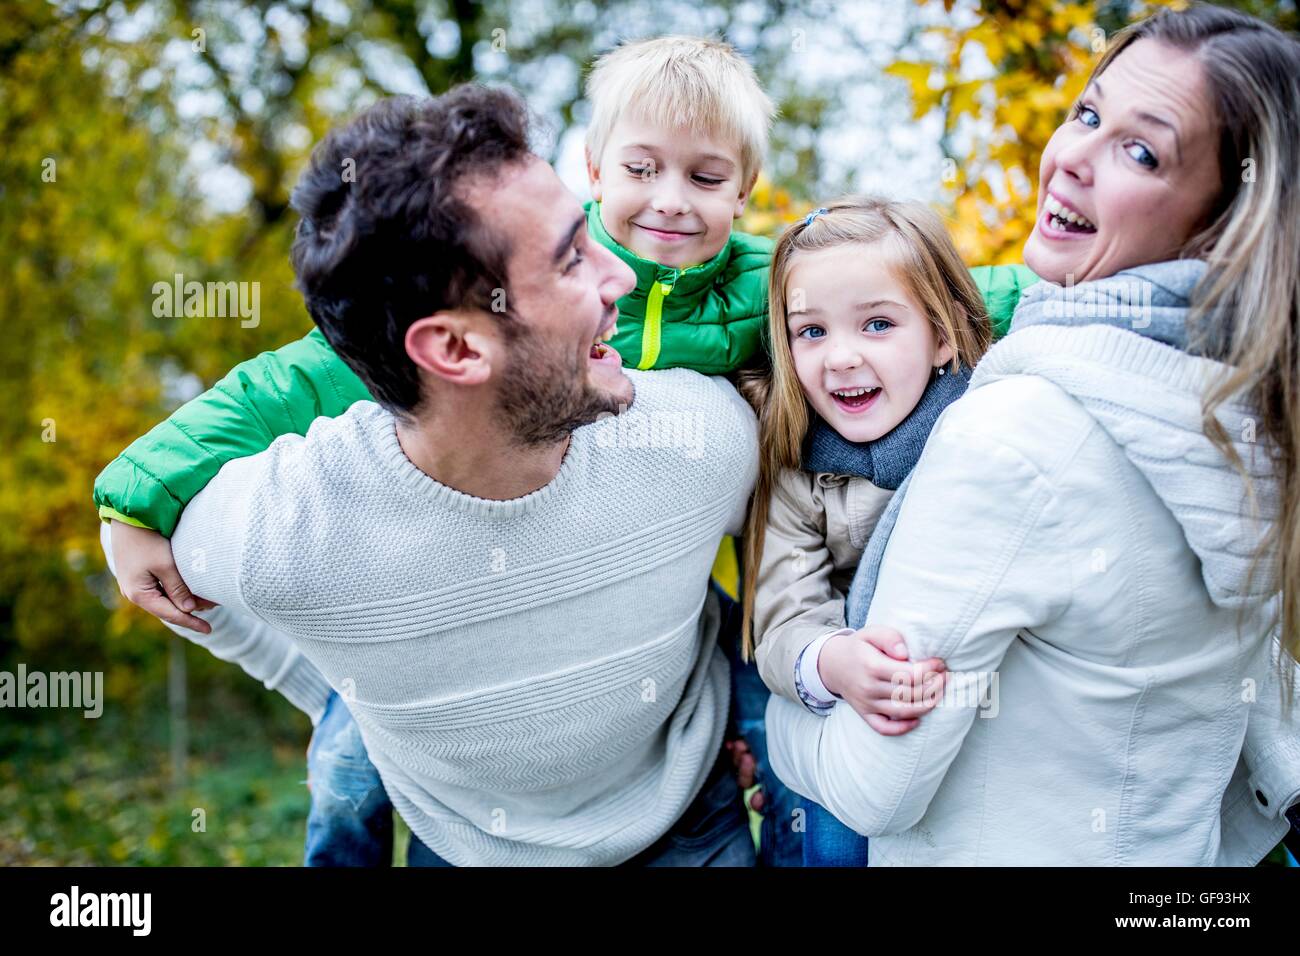 Parution du modèle. Les parents avec leurs enfants à l'automne, de rire. Banque D'Images